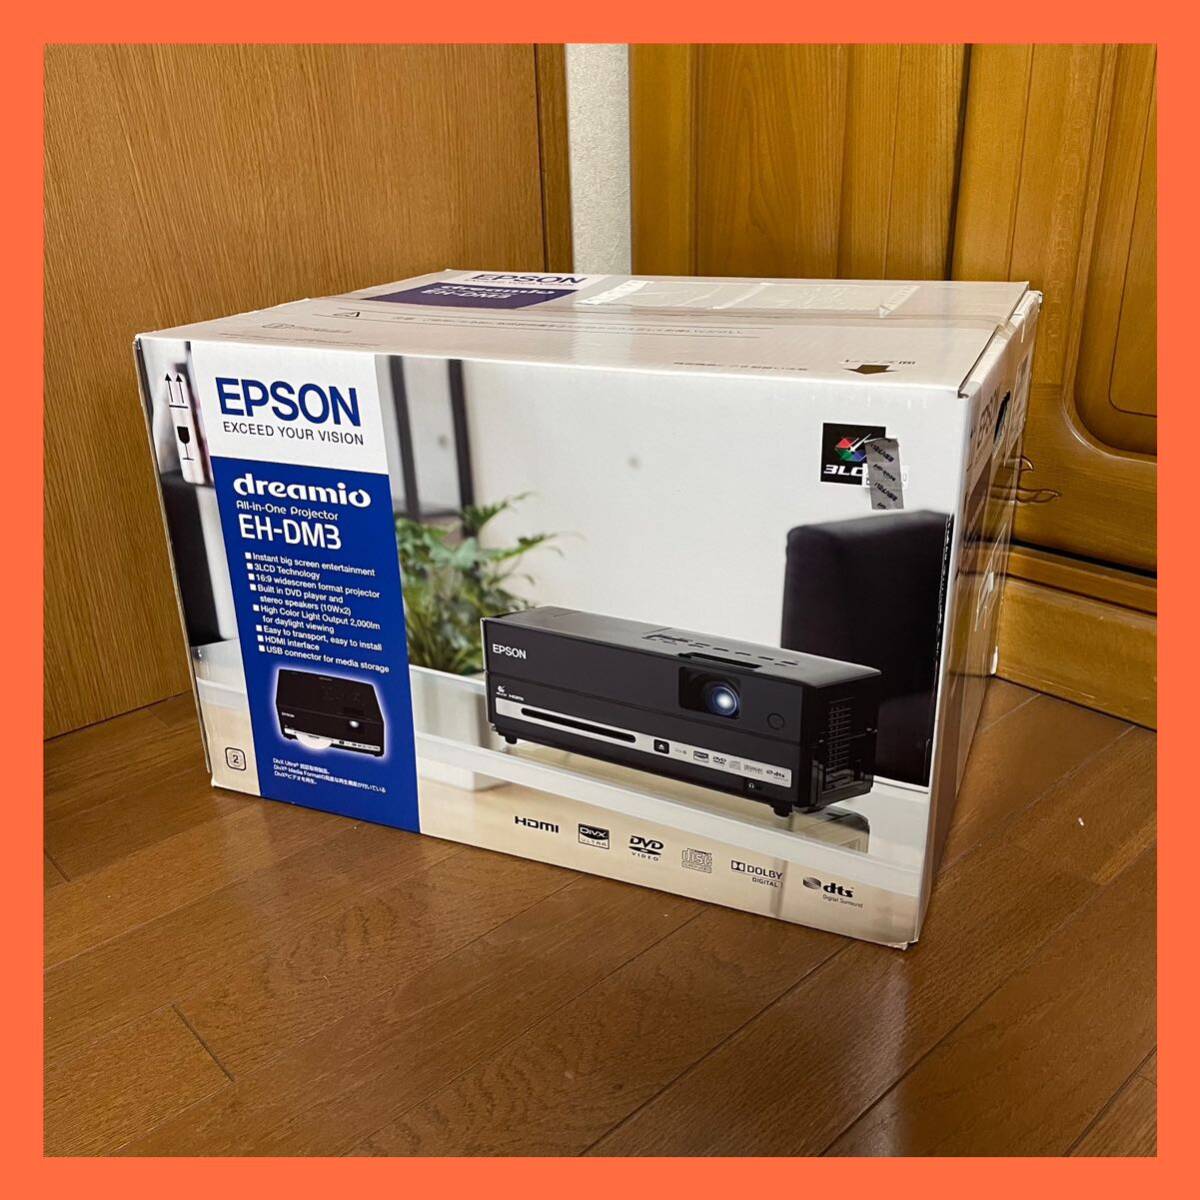 【新品未開封】EPSON EH-DM3 エプソン プロジェクター